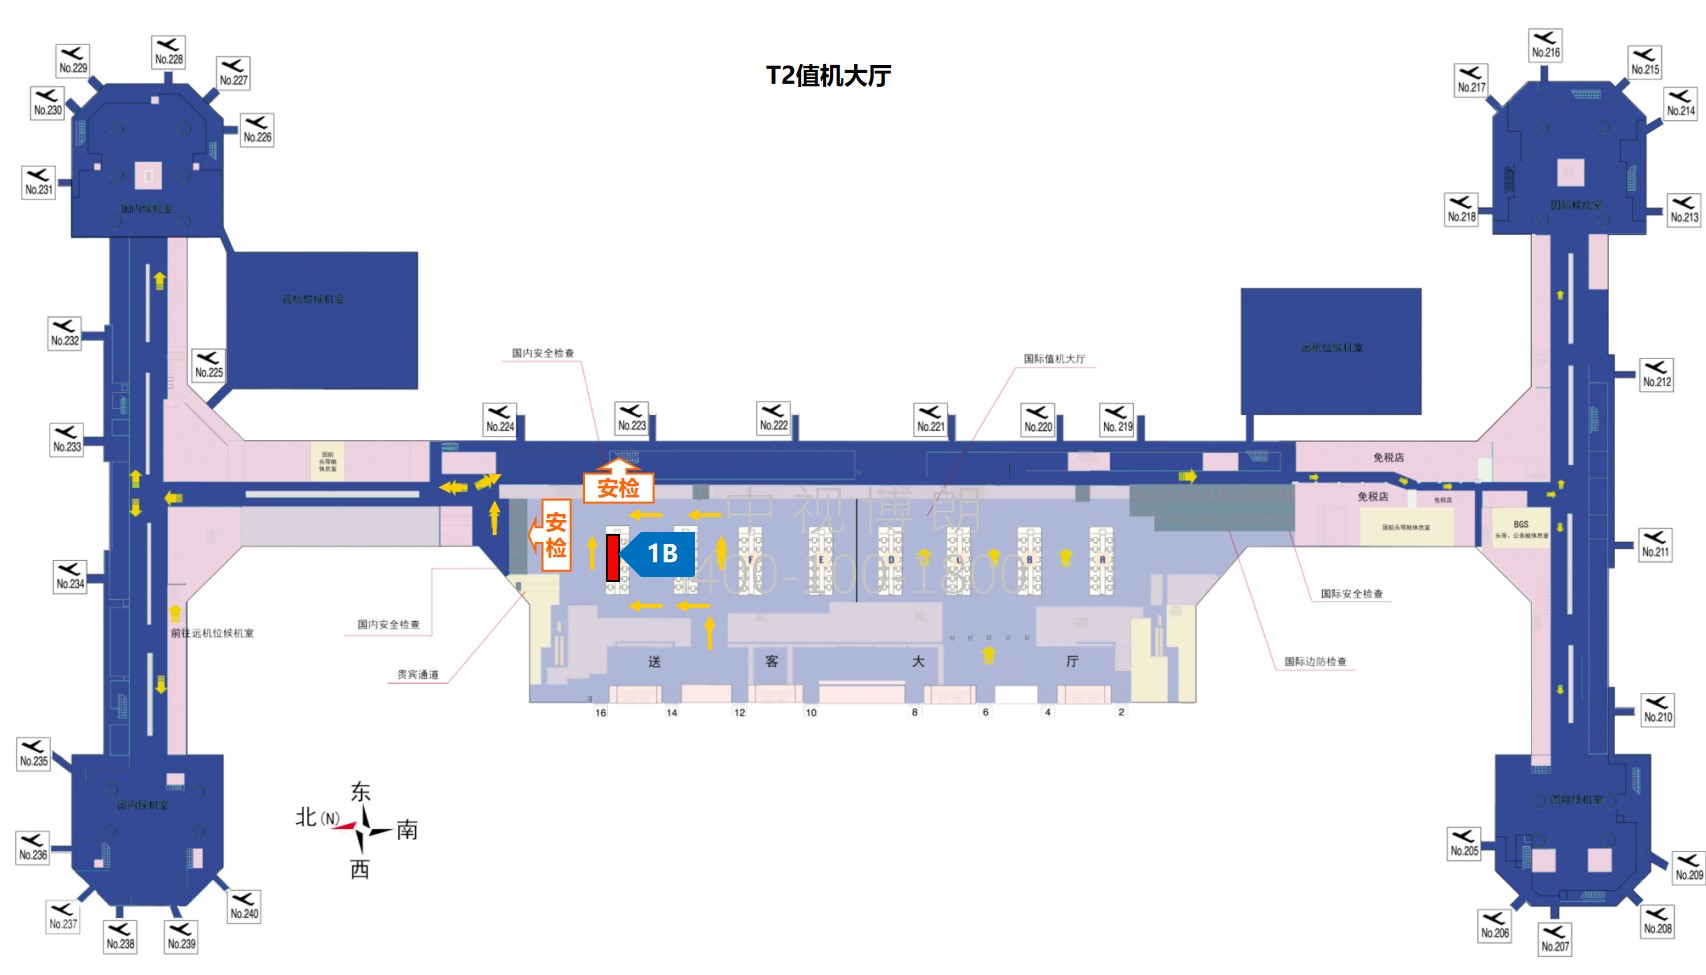 北京首都机场广告-T2 Domestic Departure Check-in Hall Elevated Light Box 1B位置图